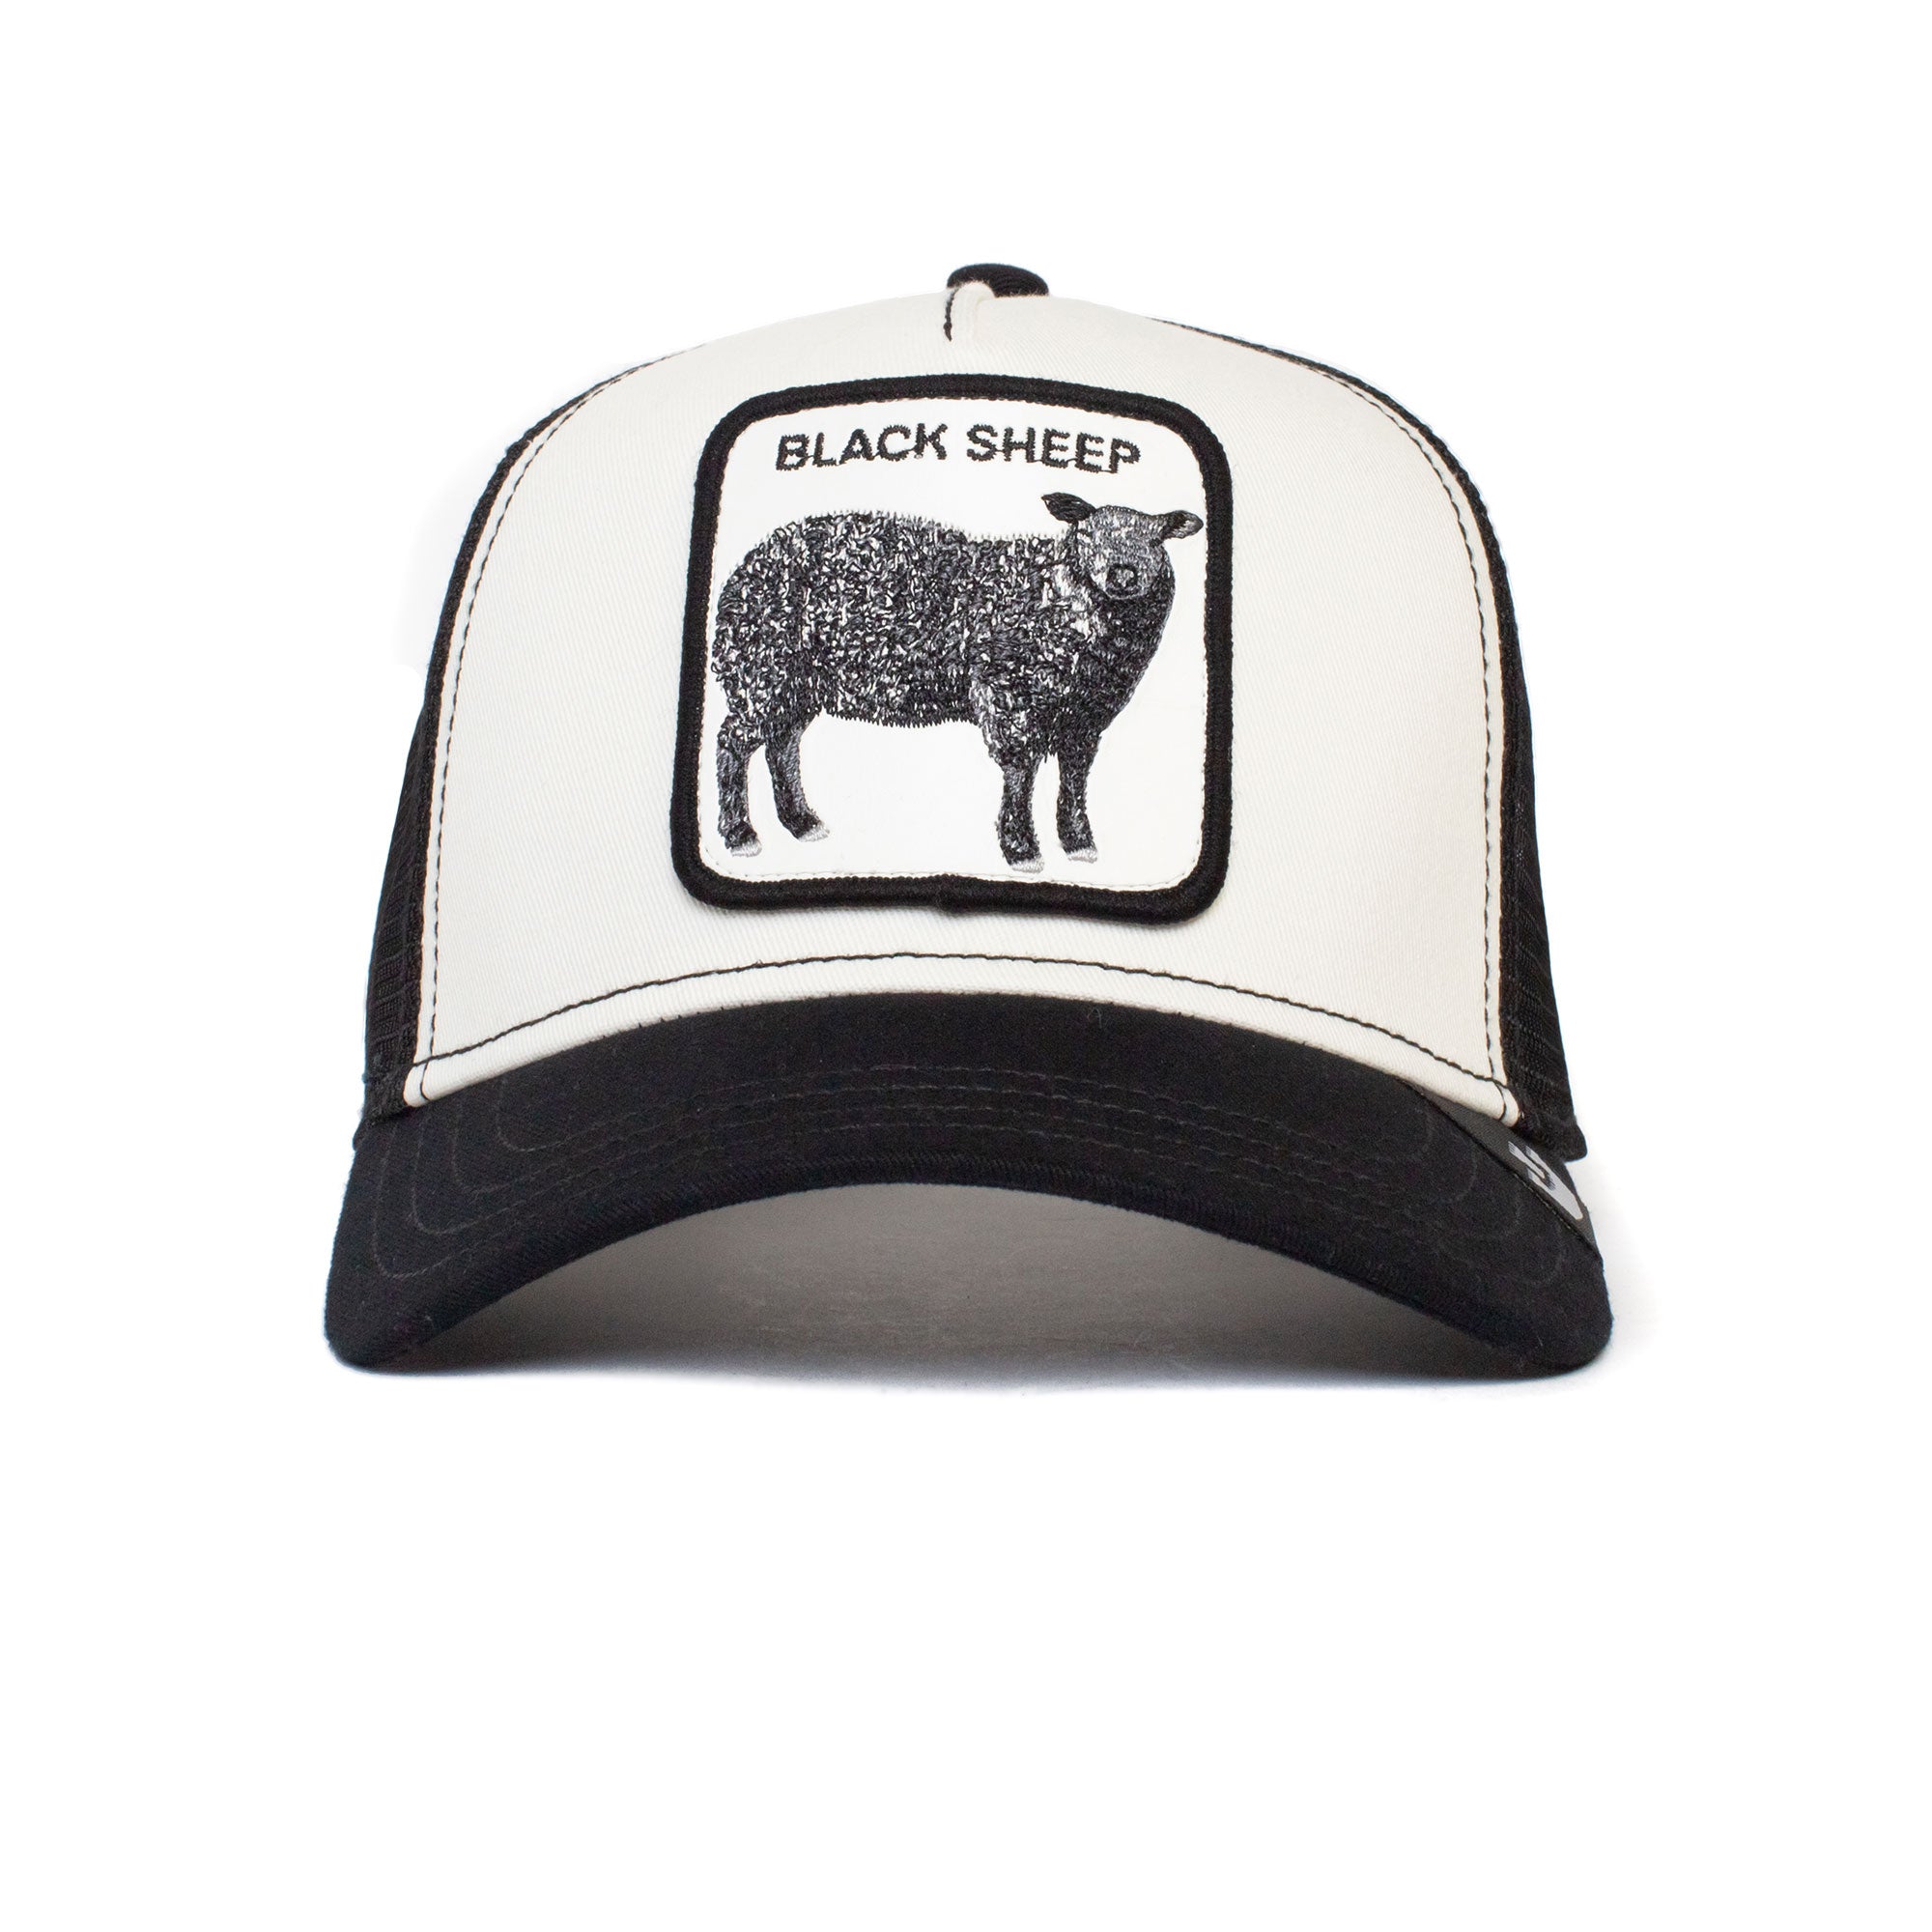 The Black Sheep - The Farm by Goorin Bros.â€šÃ Ã¶âˆšÃ¡Â¬Â¨âˆšÃœ Official Trucker  Hat